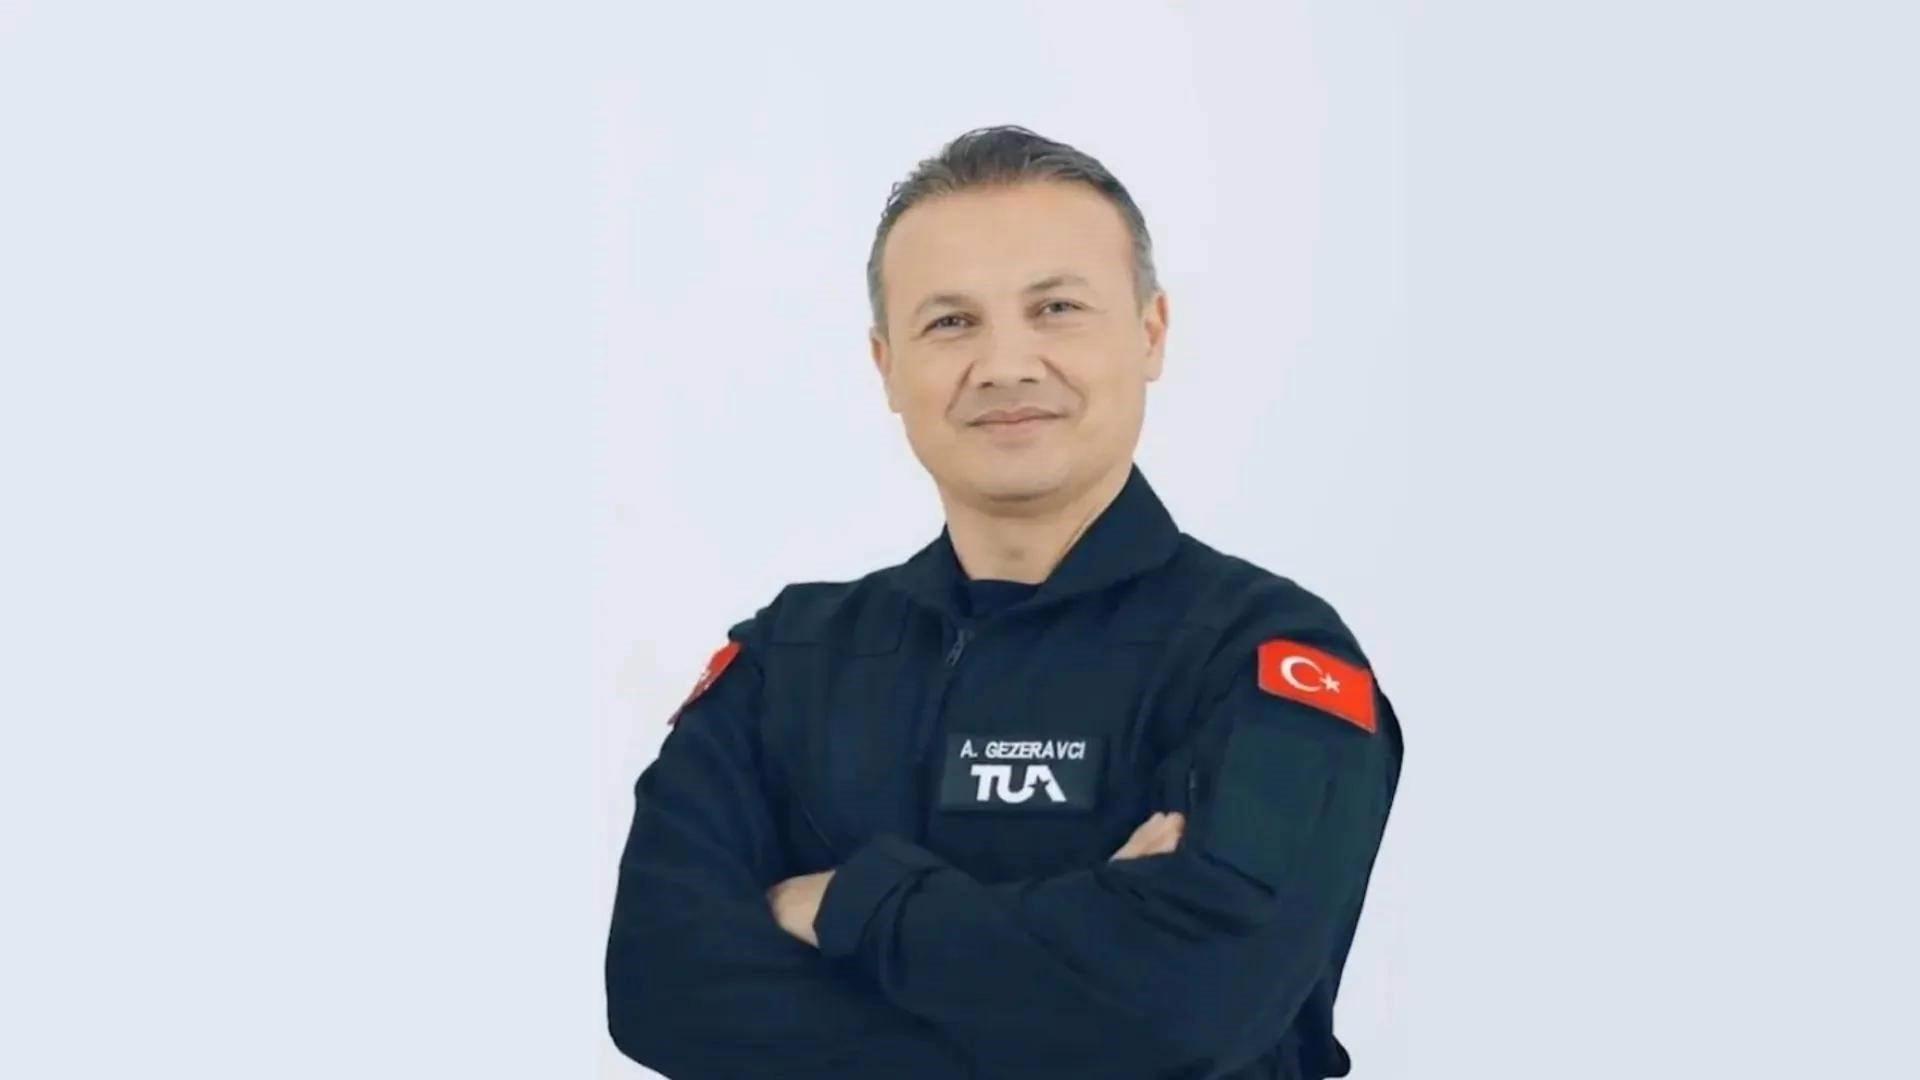 Türk astronot Alper Gezeravcı bugün ISS’te Oksijen Saturasyonu deneyi yapıyor